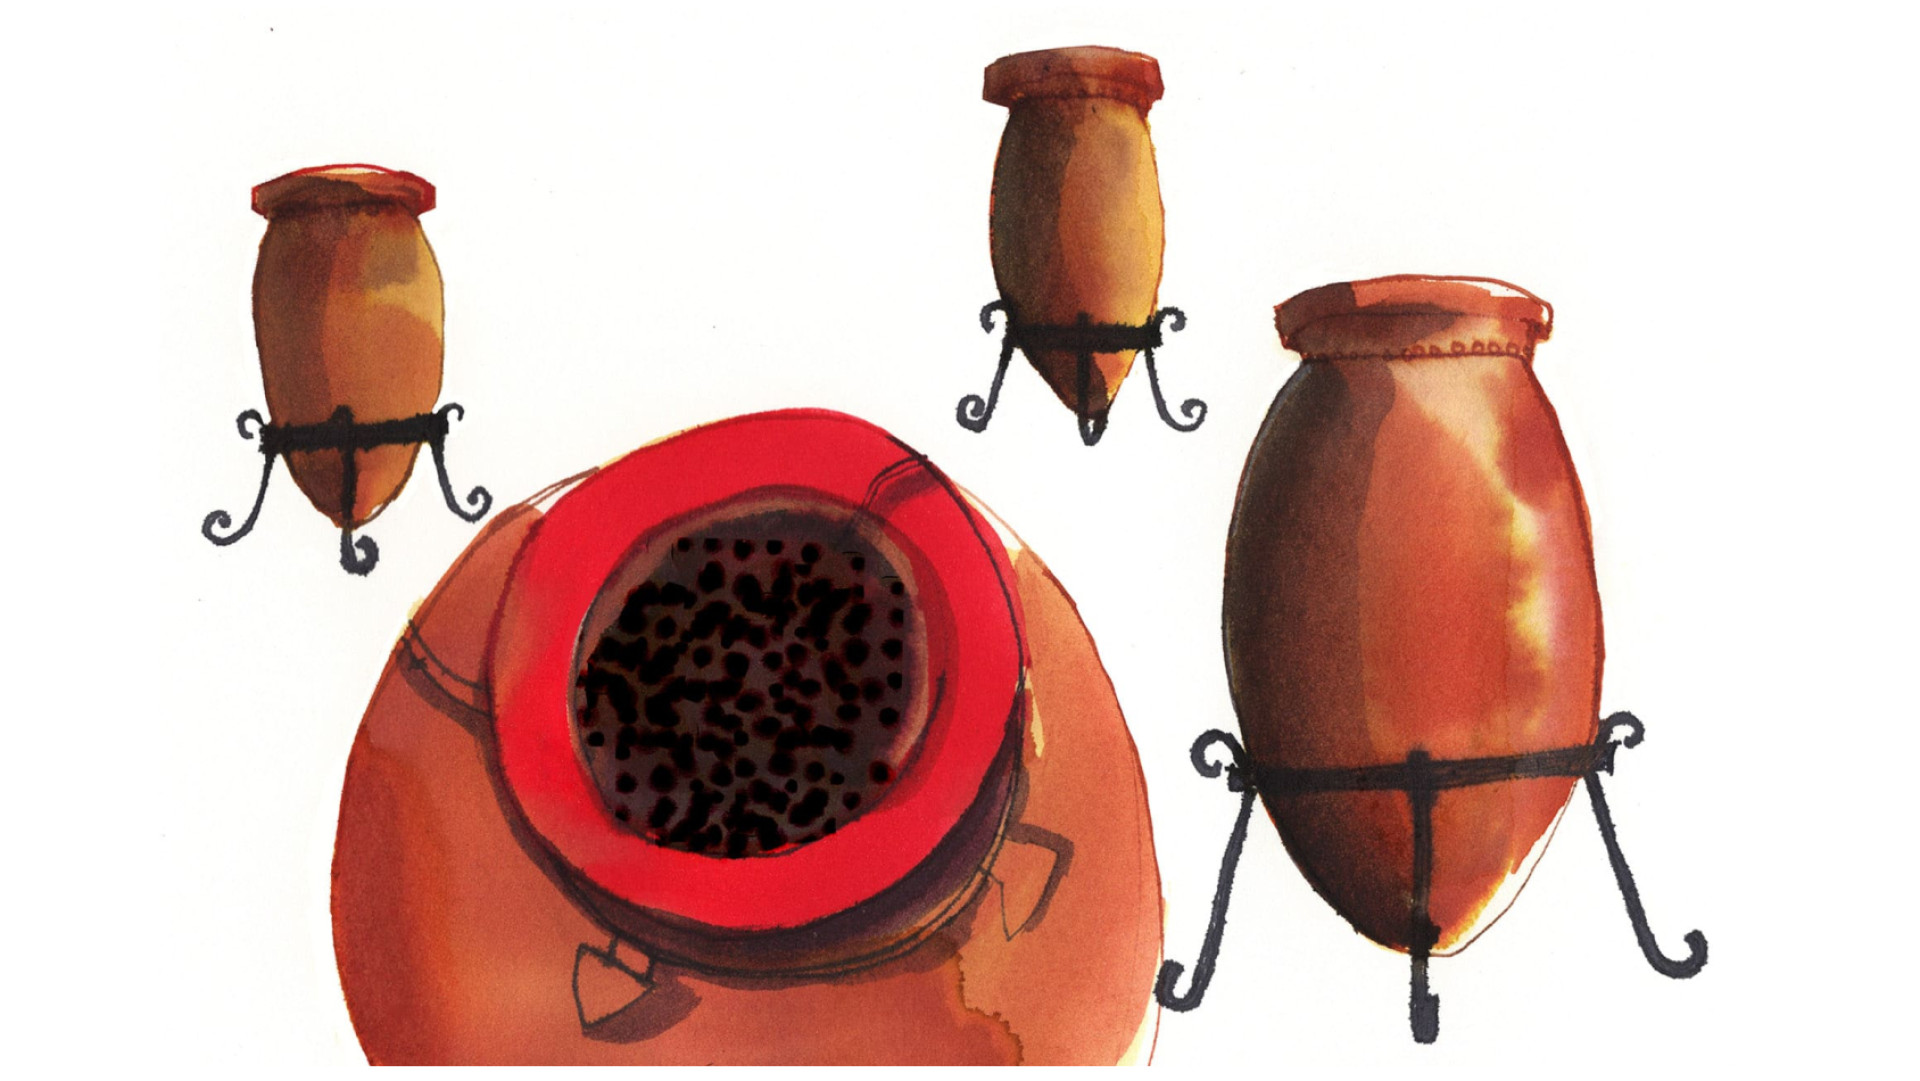 The science amphoras - Artwork by Rebecca Bradley